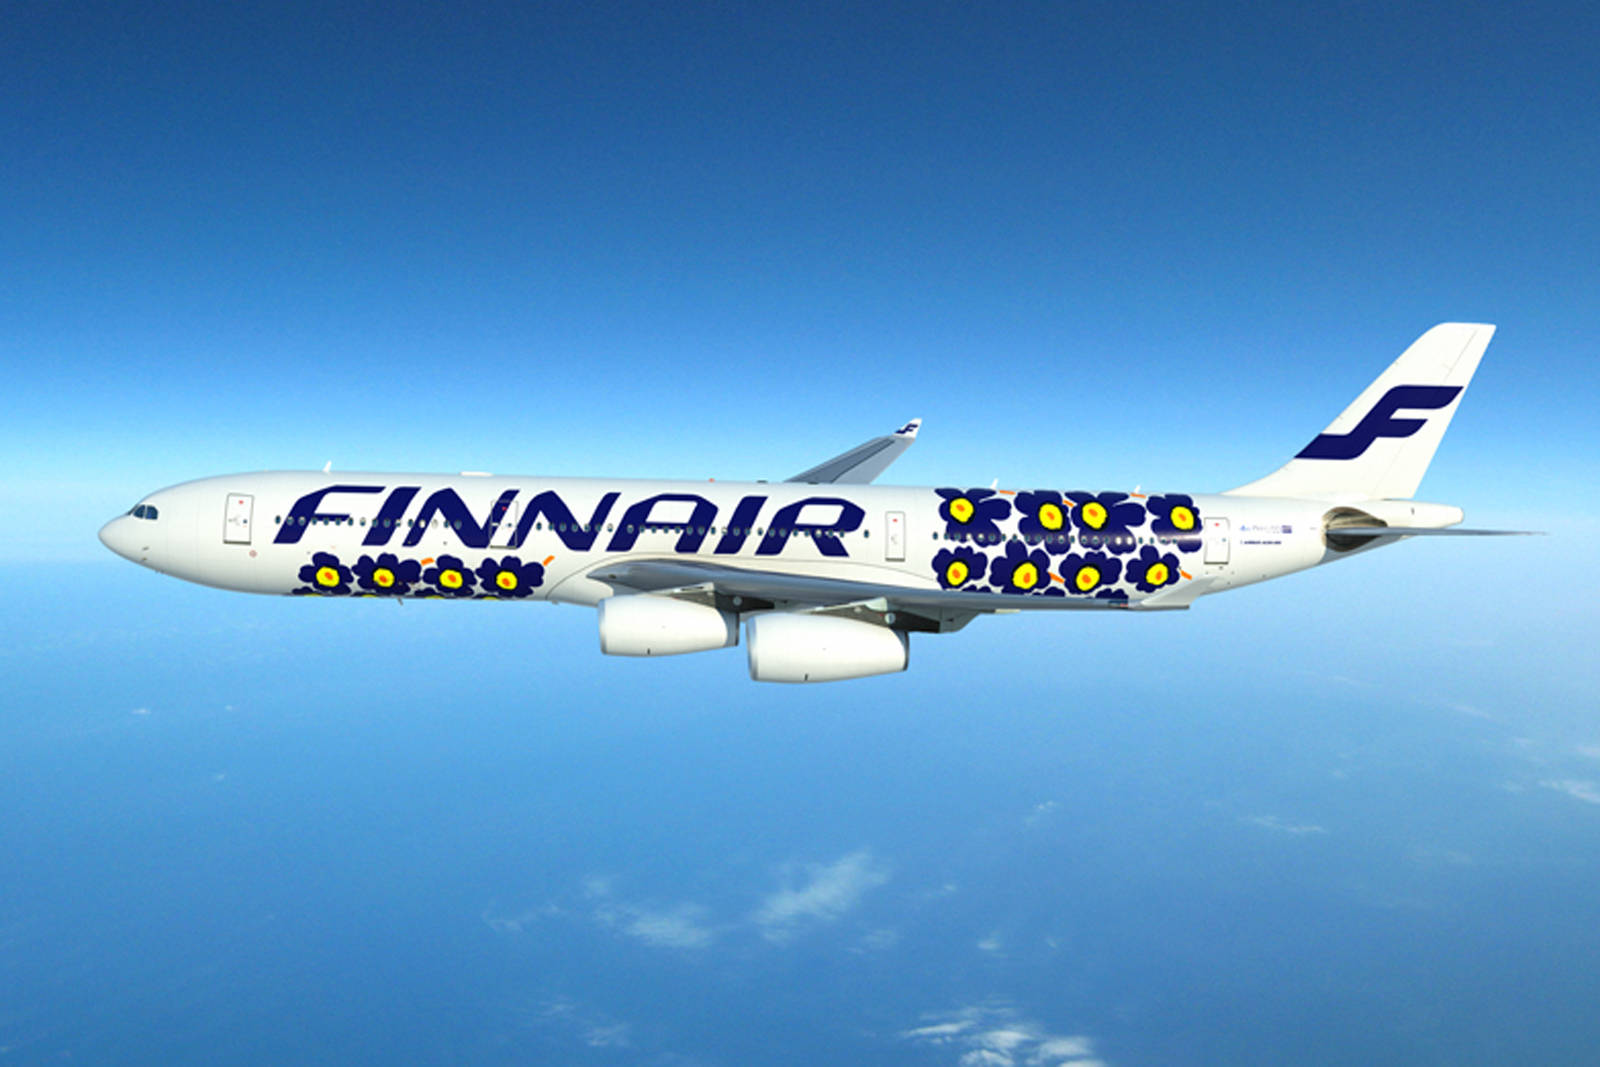 Finnair 1600 X 1067 Wallpaper